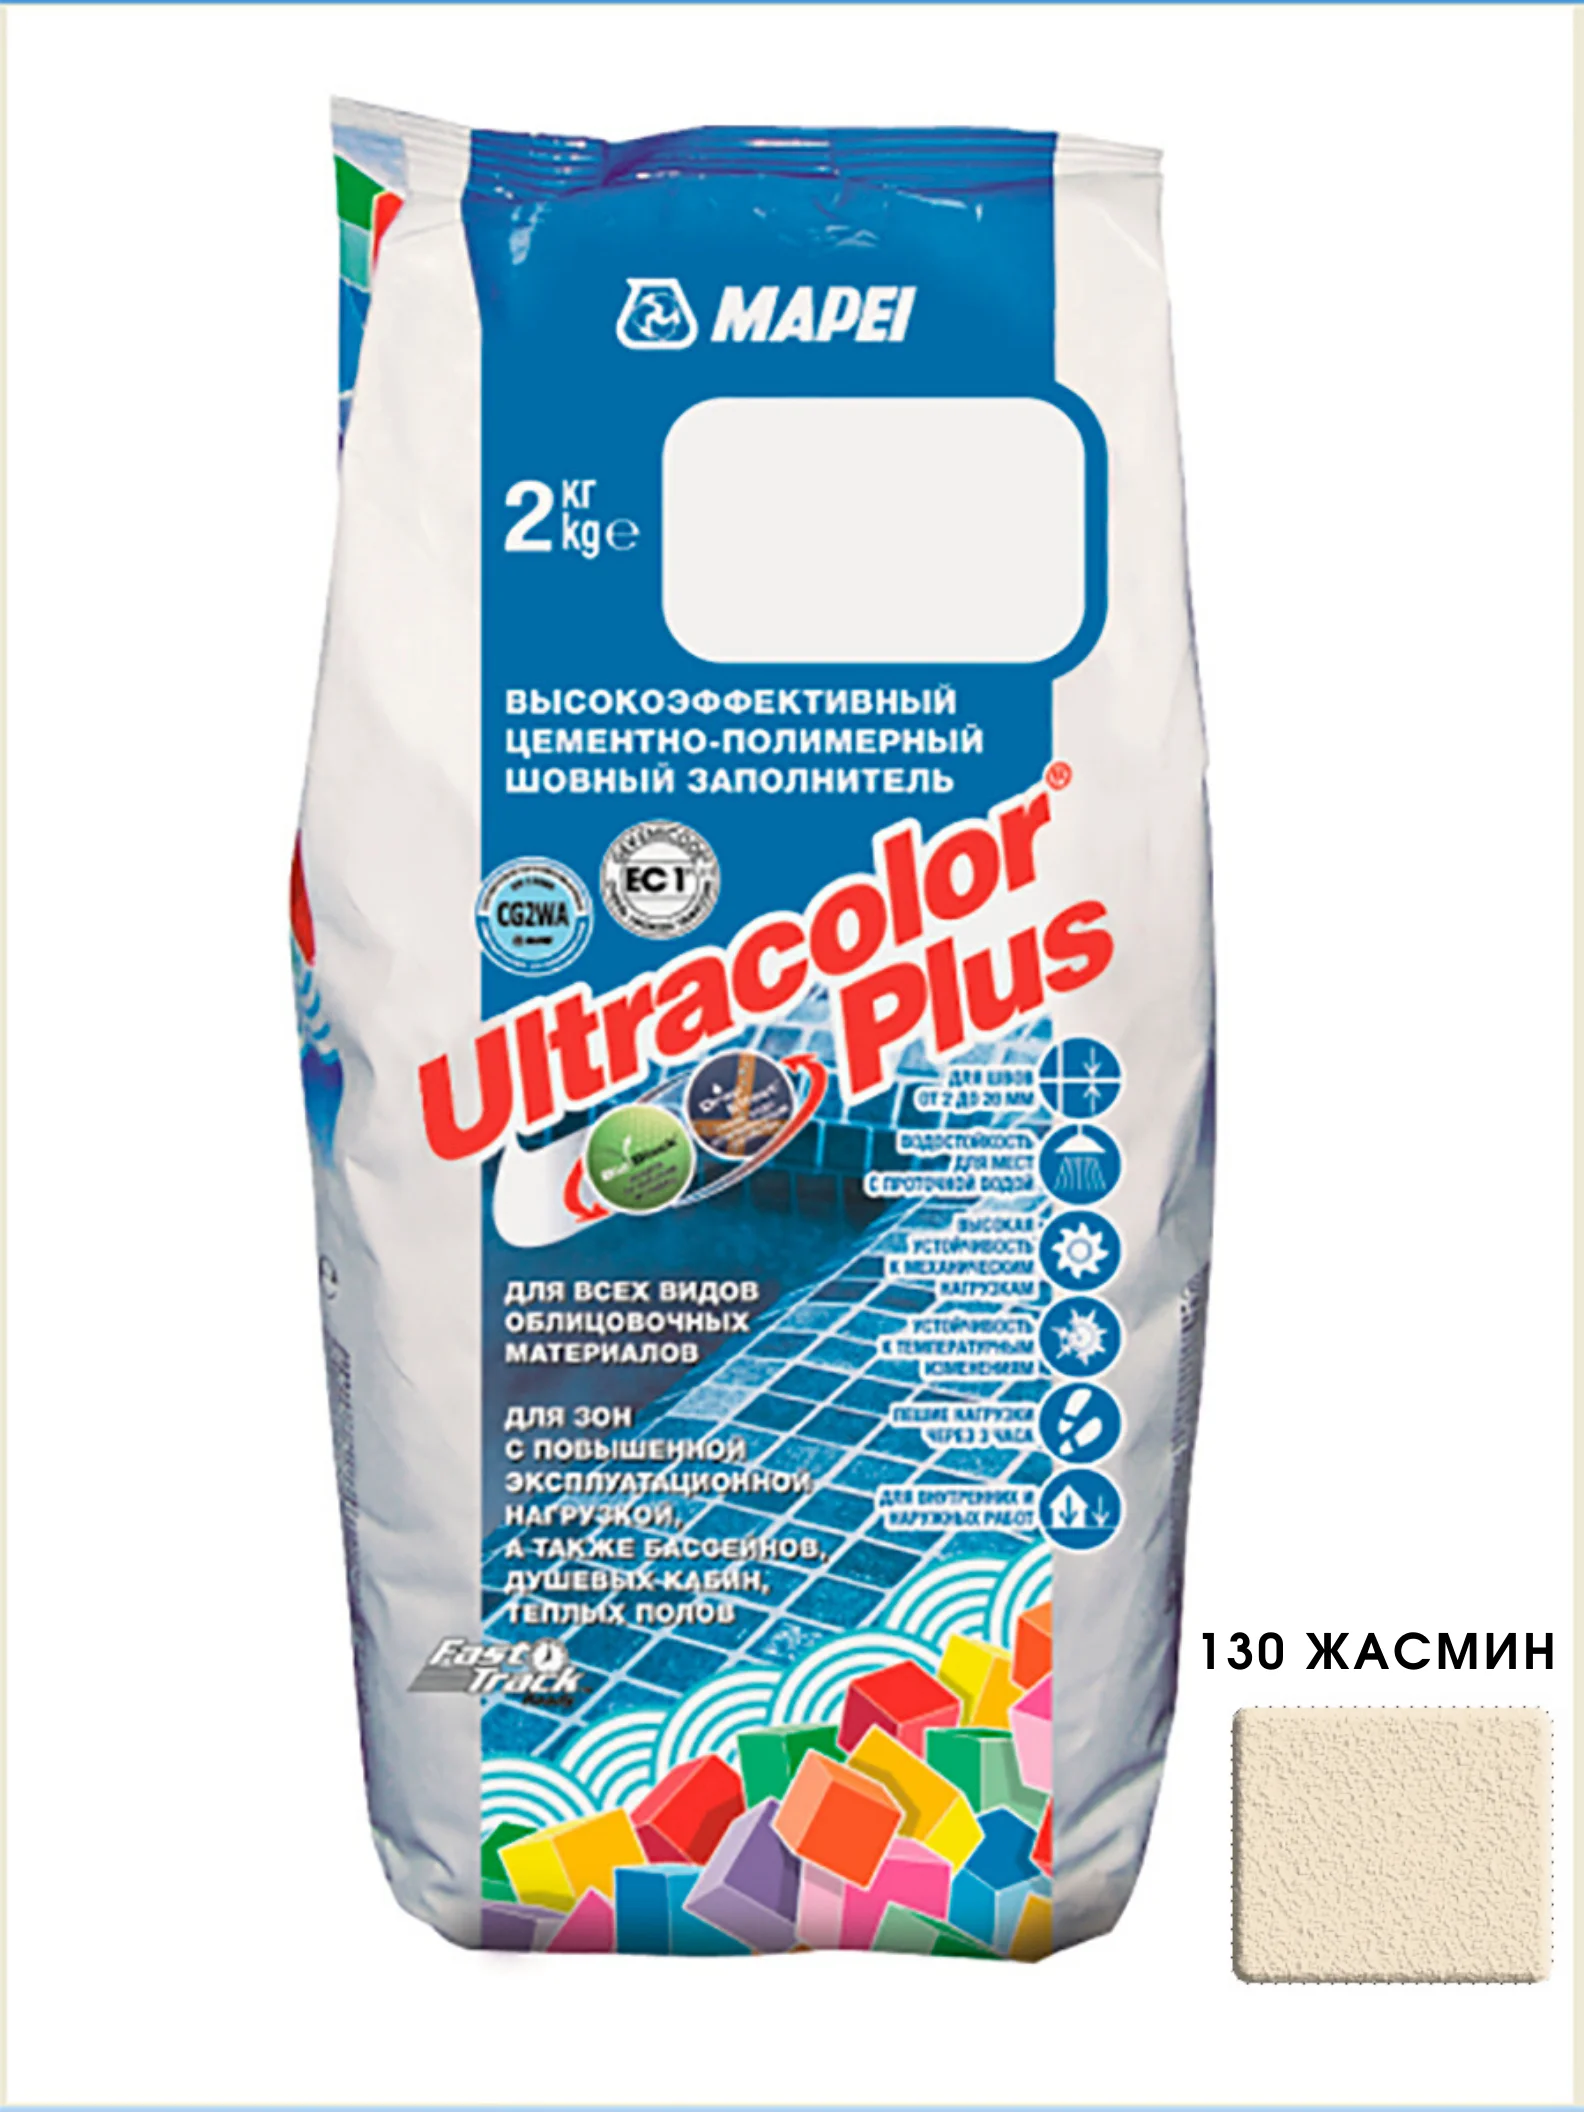 Затирка для швов MAPEI (МАПЕИ) Ultracolor plus Ультраколор плюс 130 жасмин 2кг |